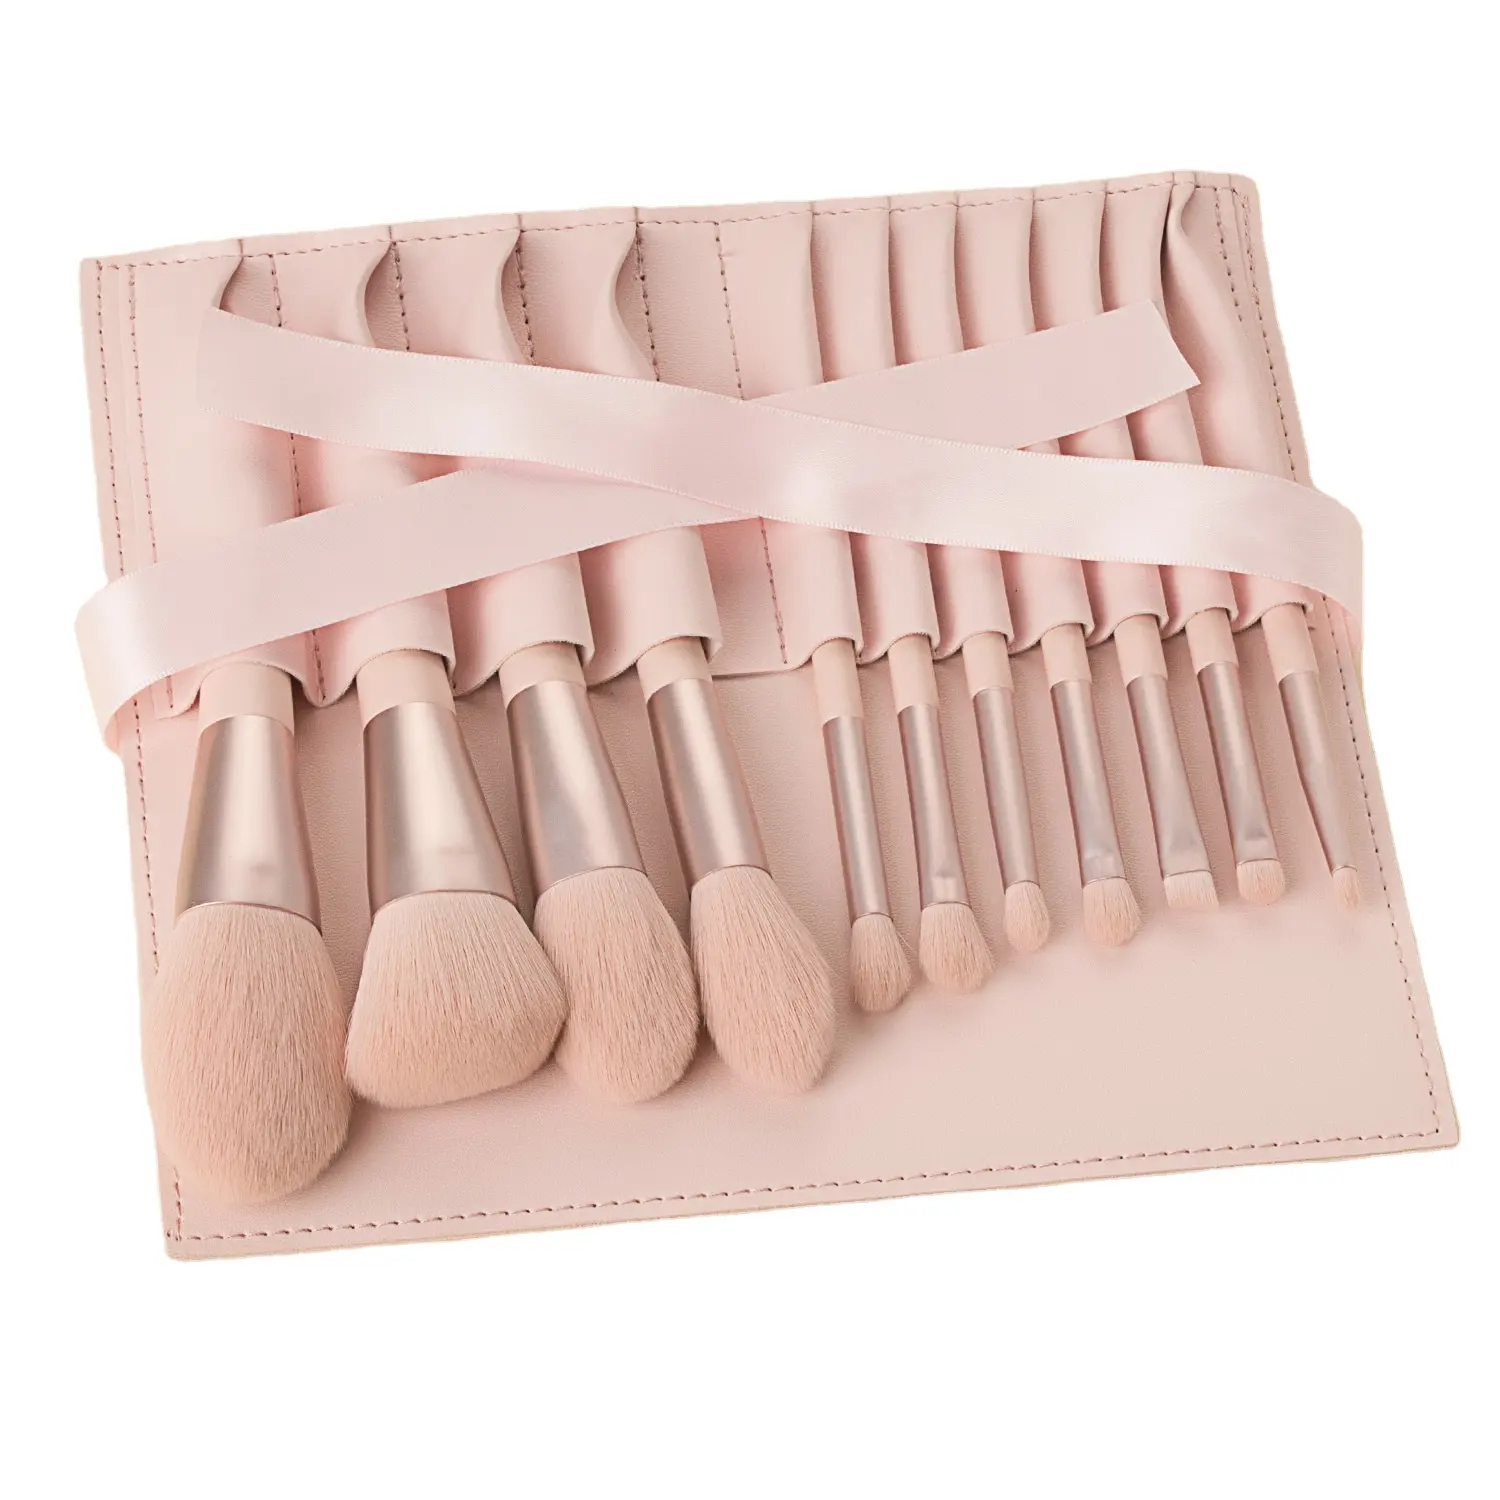 Großhandel 11Pcs Pink Make Up Brushes 11Pcs Handelsmarke Professional Maquill aje Make-up Brushes Set